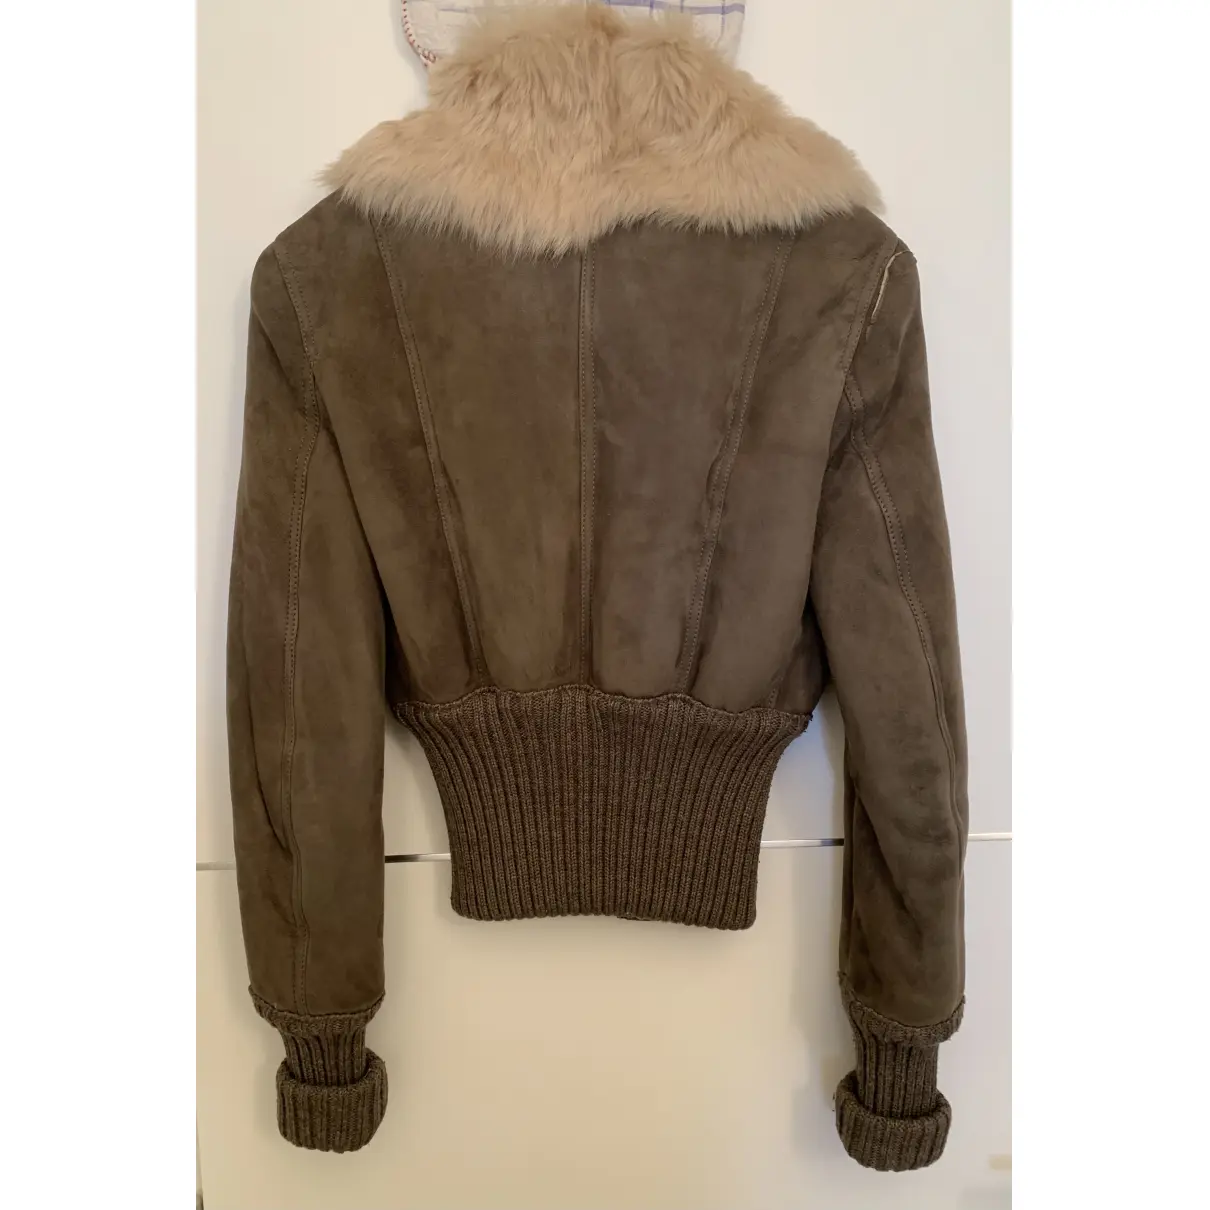 Buy Patrizia Pepe Leather jacket online